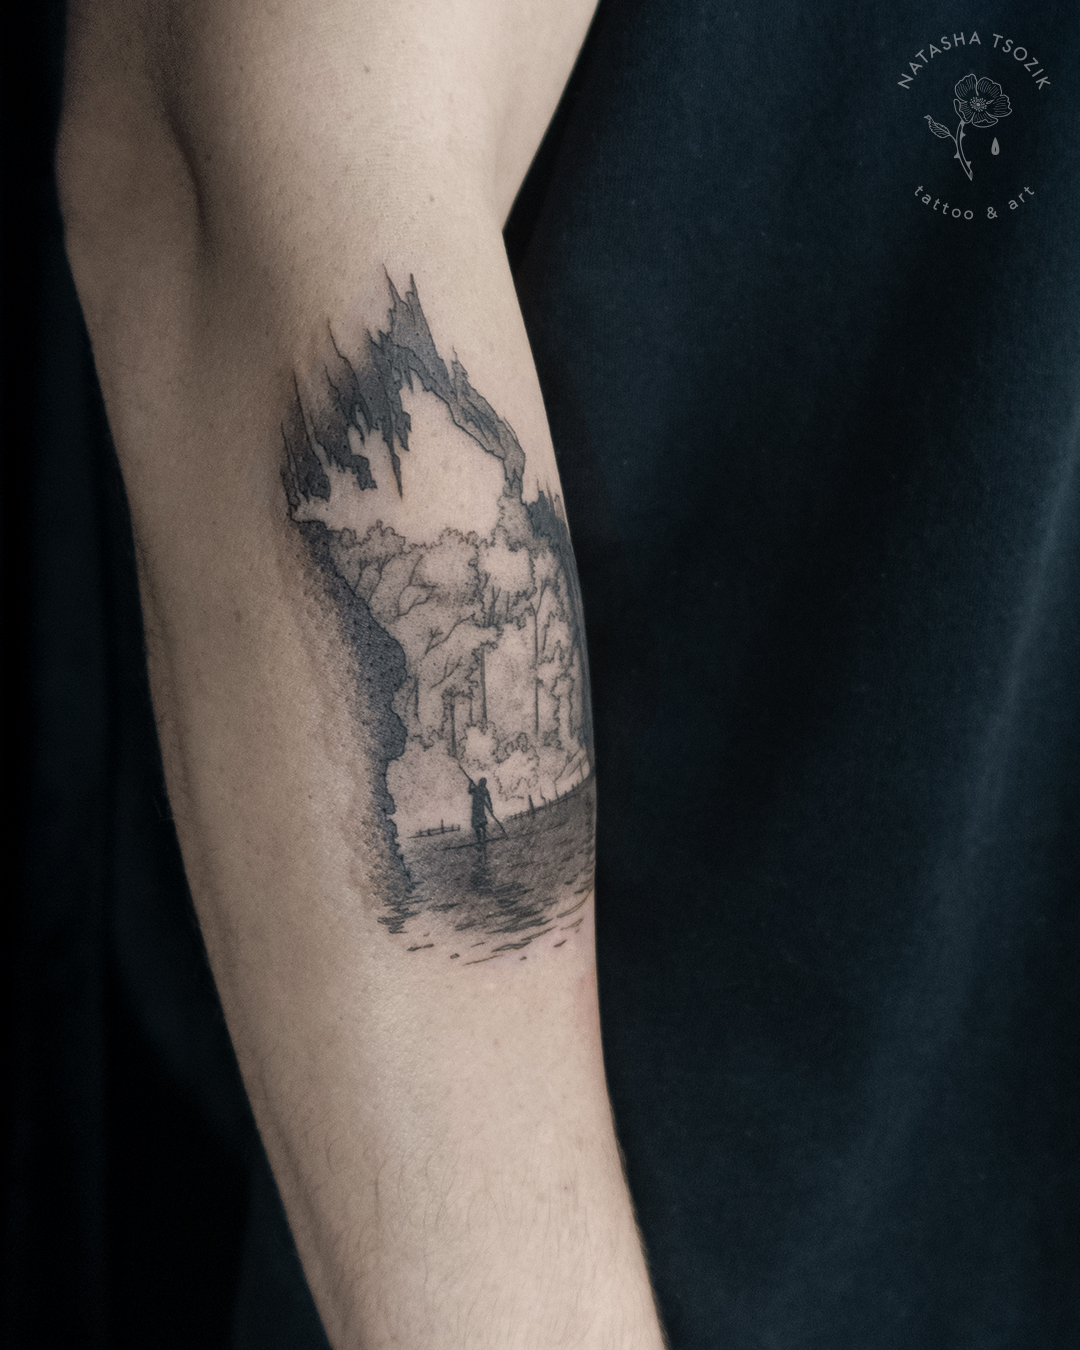 Cave Fine Line Tattoo on a forearm by Natasha Tsozik